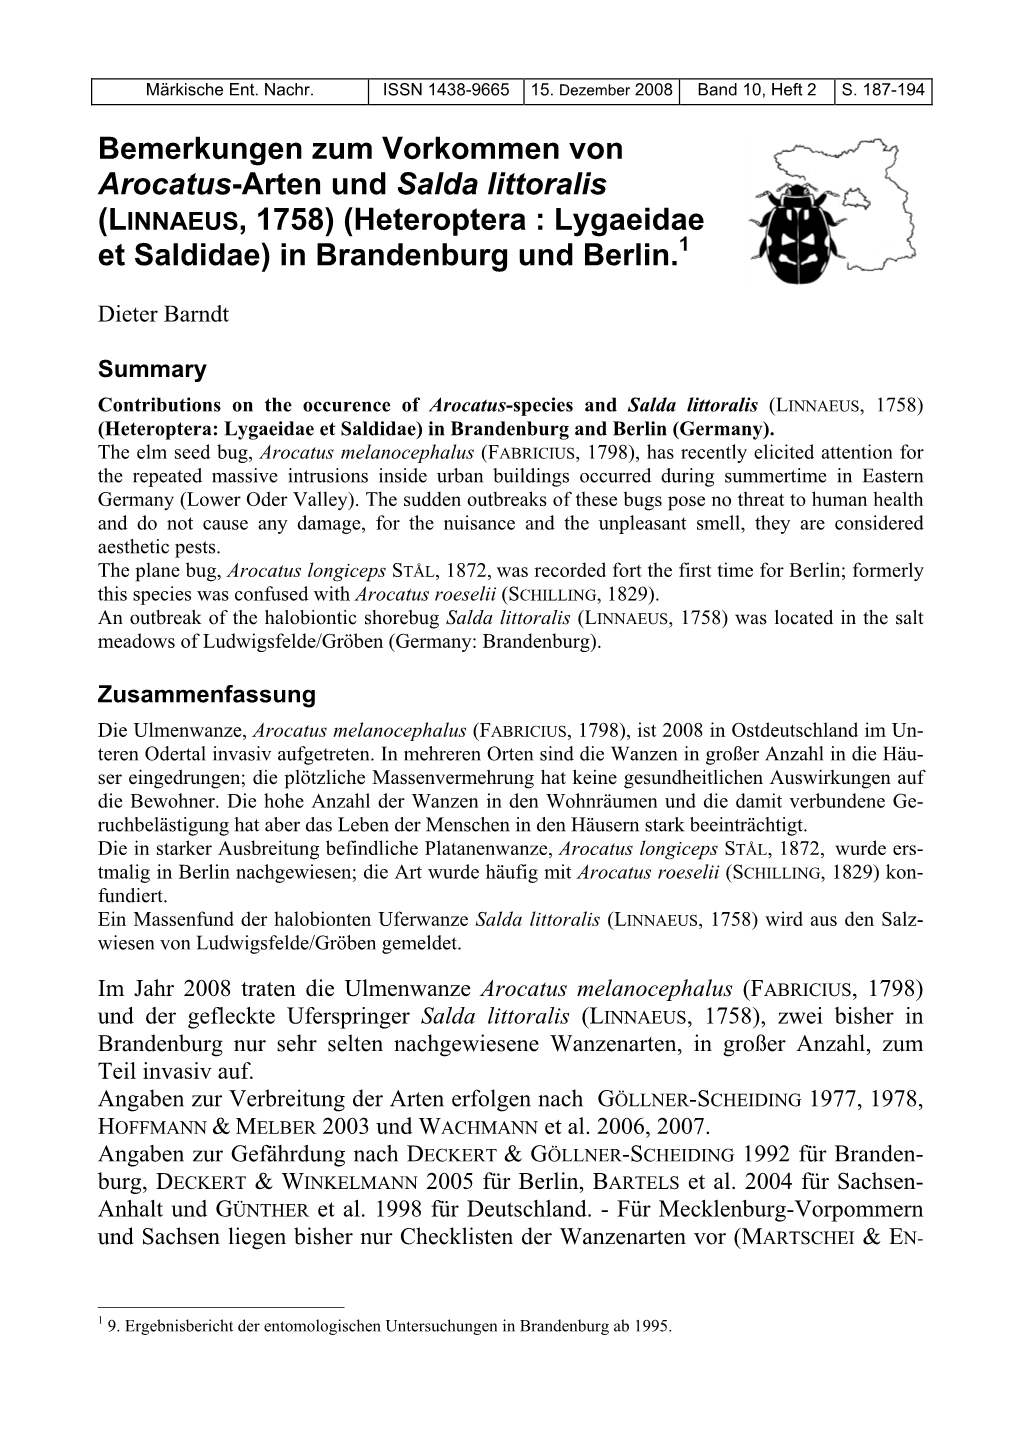 Bemerkungen Zum Vorkommen Von Arocatus-Arten Und Salda Littoralis (LINNAEUS, 1758) (Heteroptera : Lygaeidae Et Saldidae) in Brandenburg Und Berlin.1